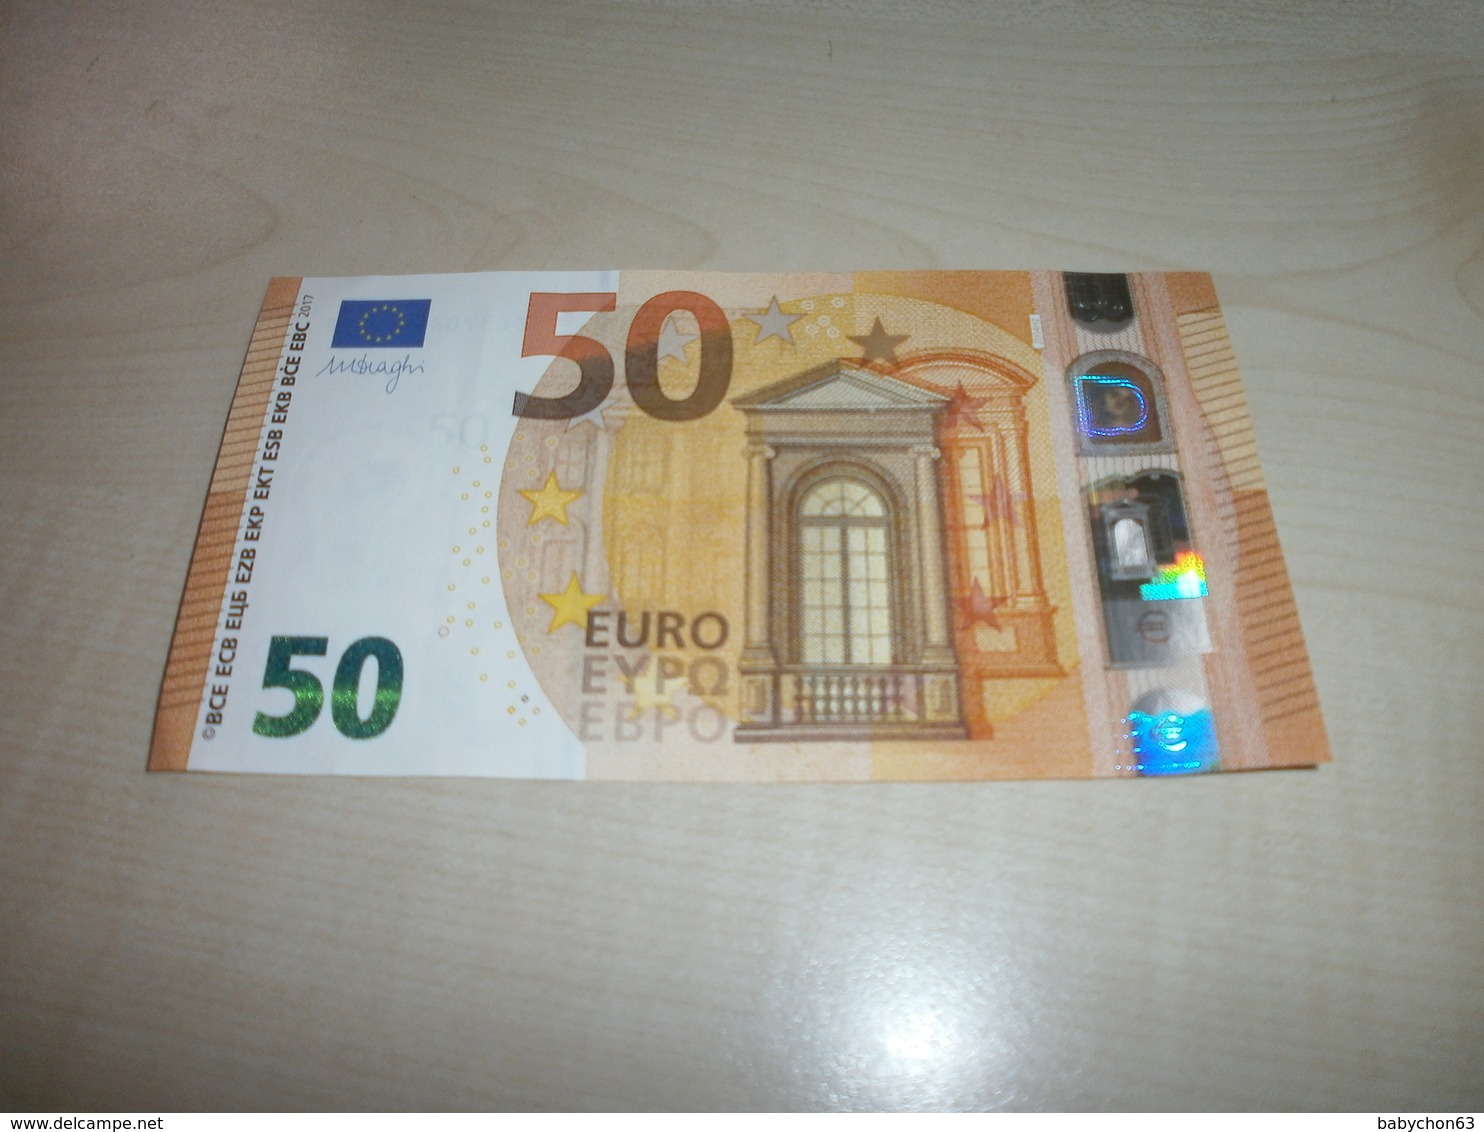 50 EUROS (Z Z004 H2) - 50 Euro